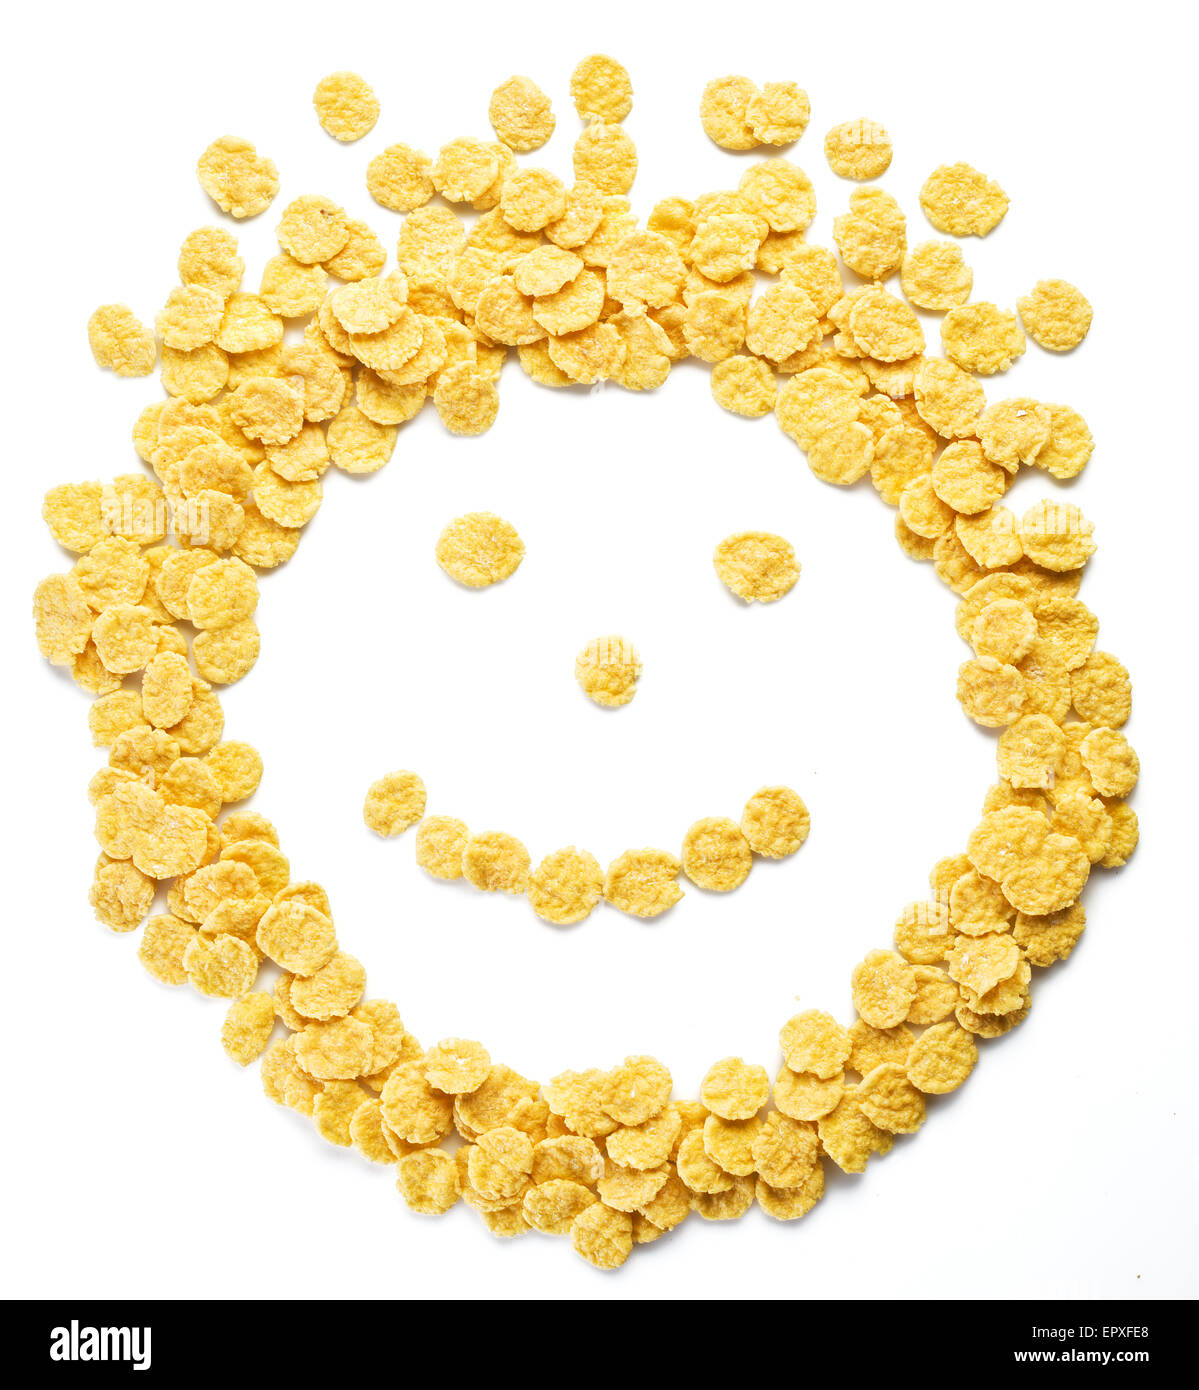 Cornflakes disposés comme smiley face sur un fond blanc. Banque D'Images